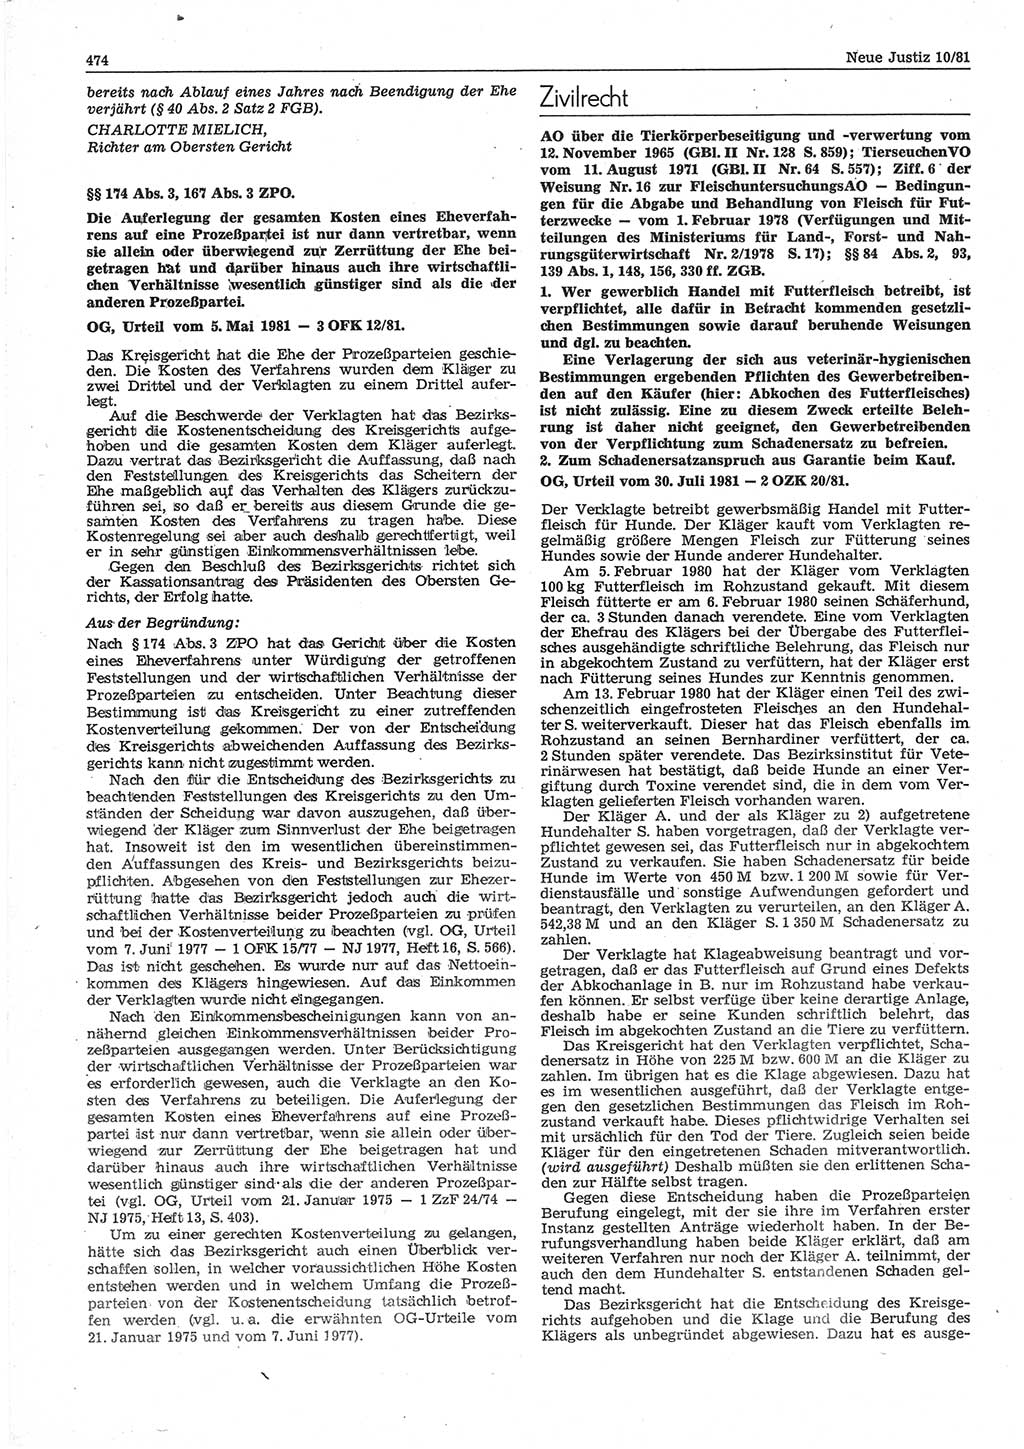 Neue Justiz (NJ), Zeitschrift für sozialistisches Recht und Gesetzlichkeit [Deutsche Demokratische Republik (DDR)], 35. Jahrgang 1981, Seite 474 (NJ DDR 1981, S. 474)